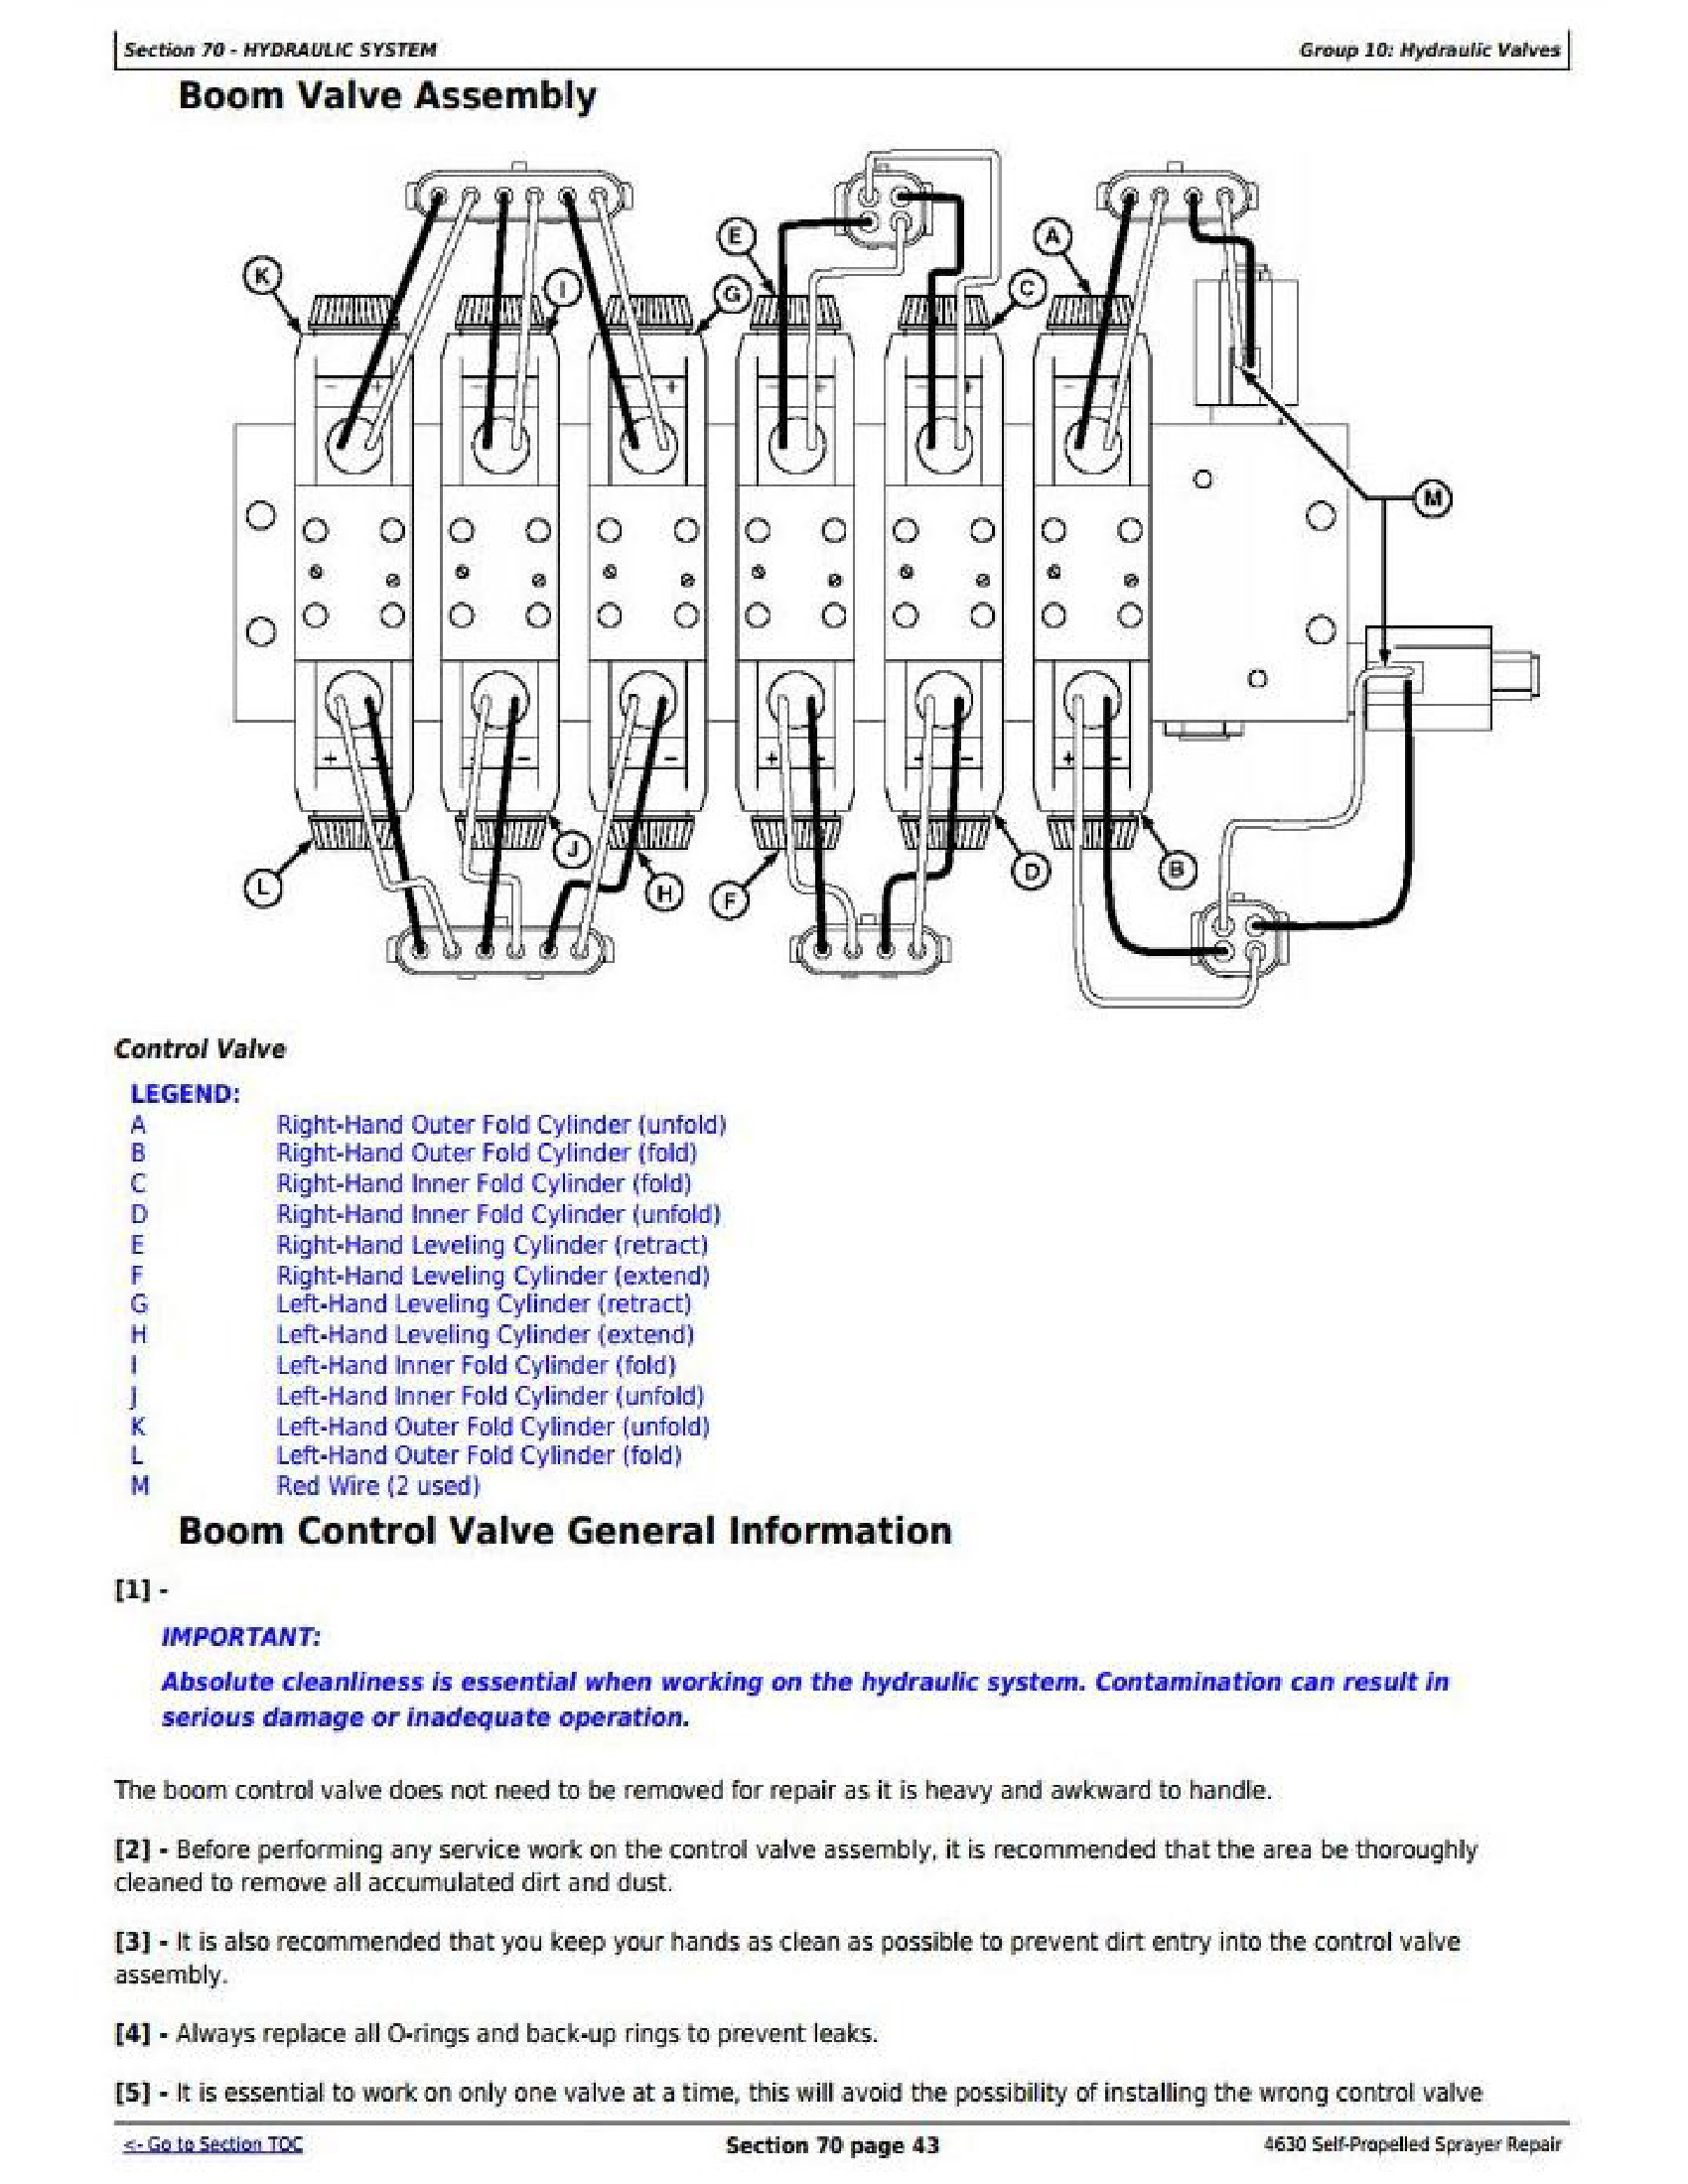 John Deere 5520N manual pdf